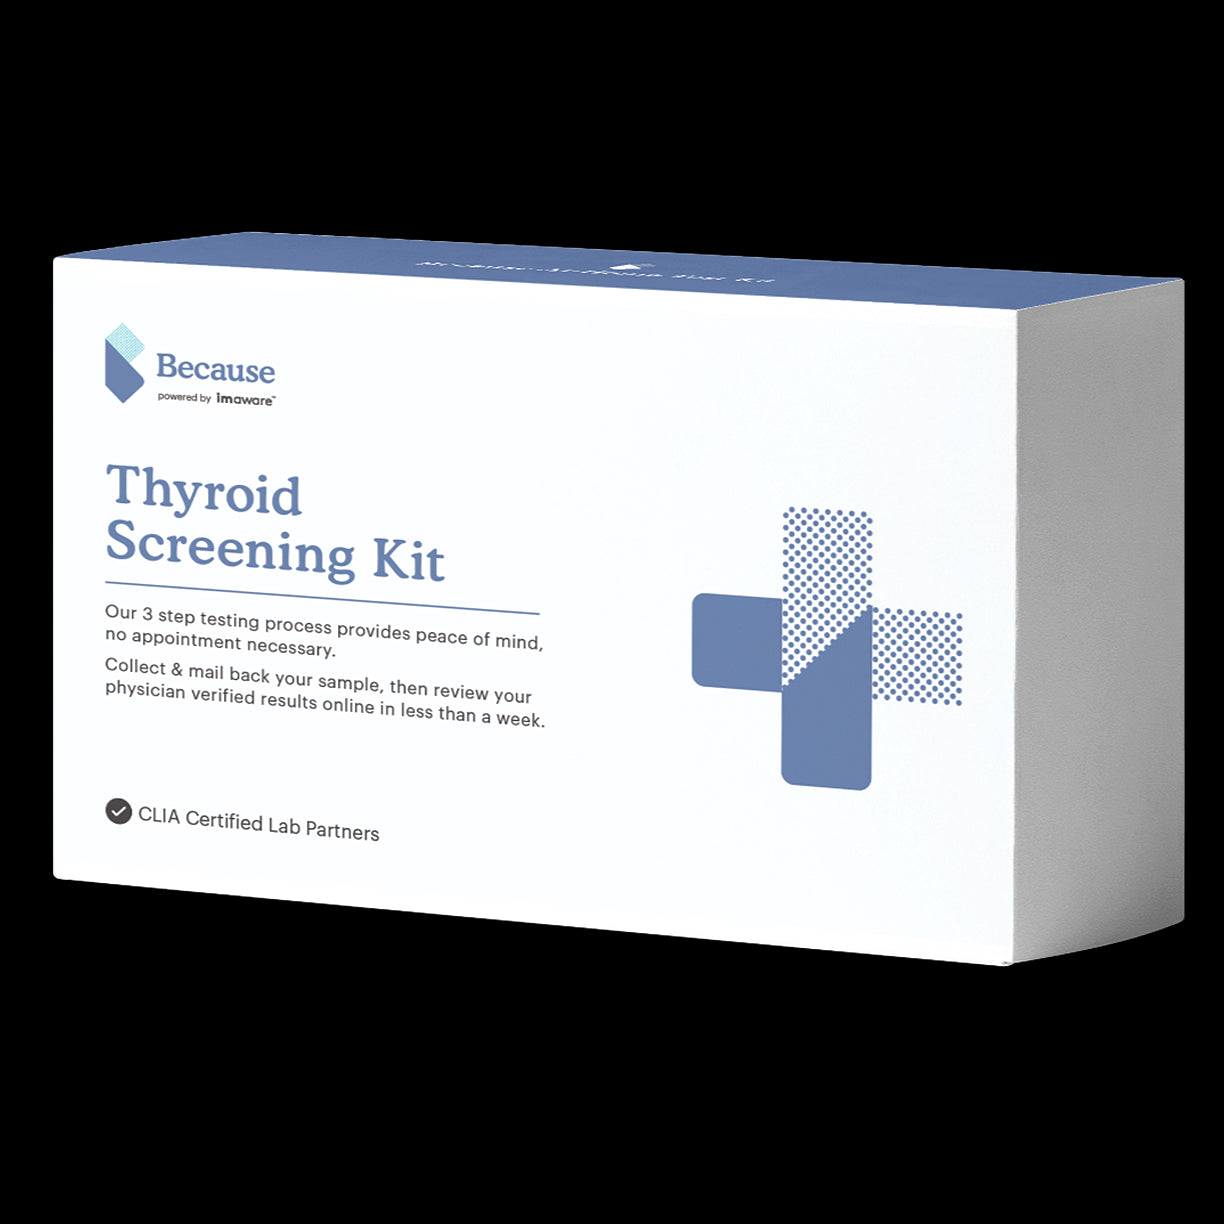 Because Thyroid Screening Kit